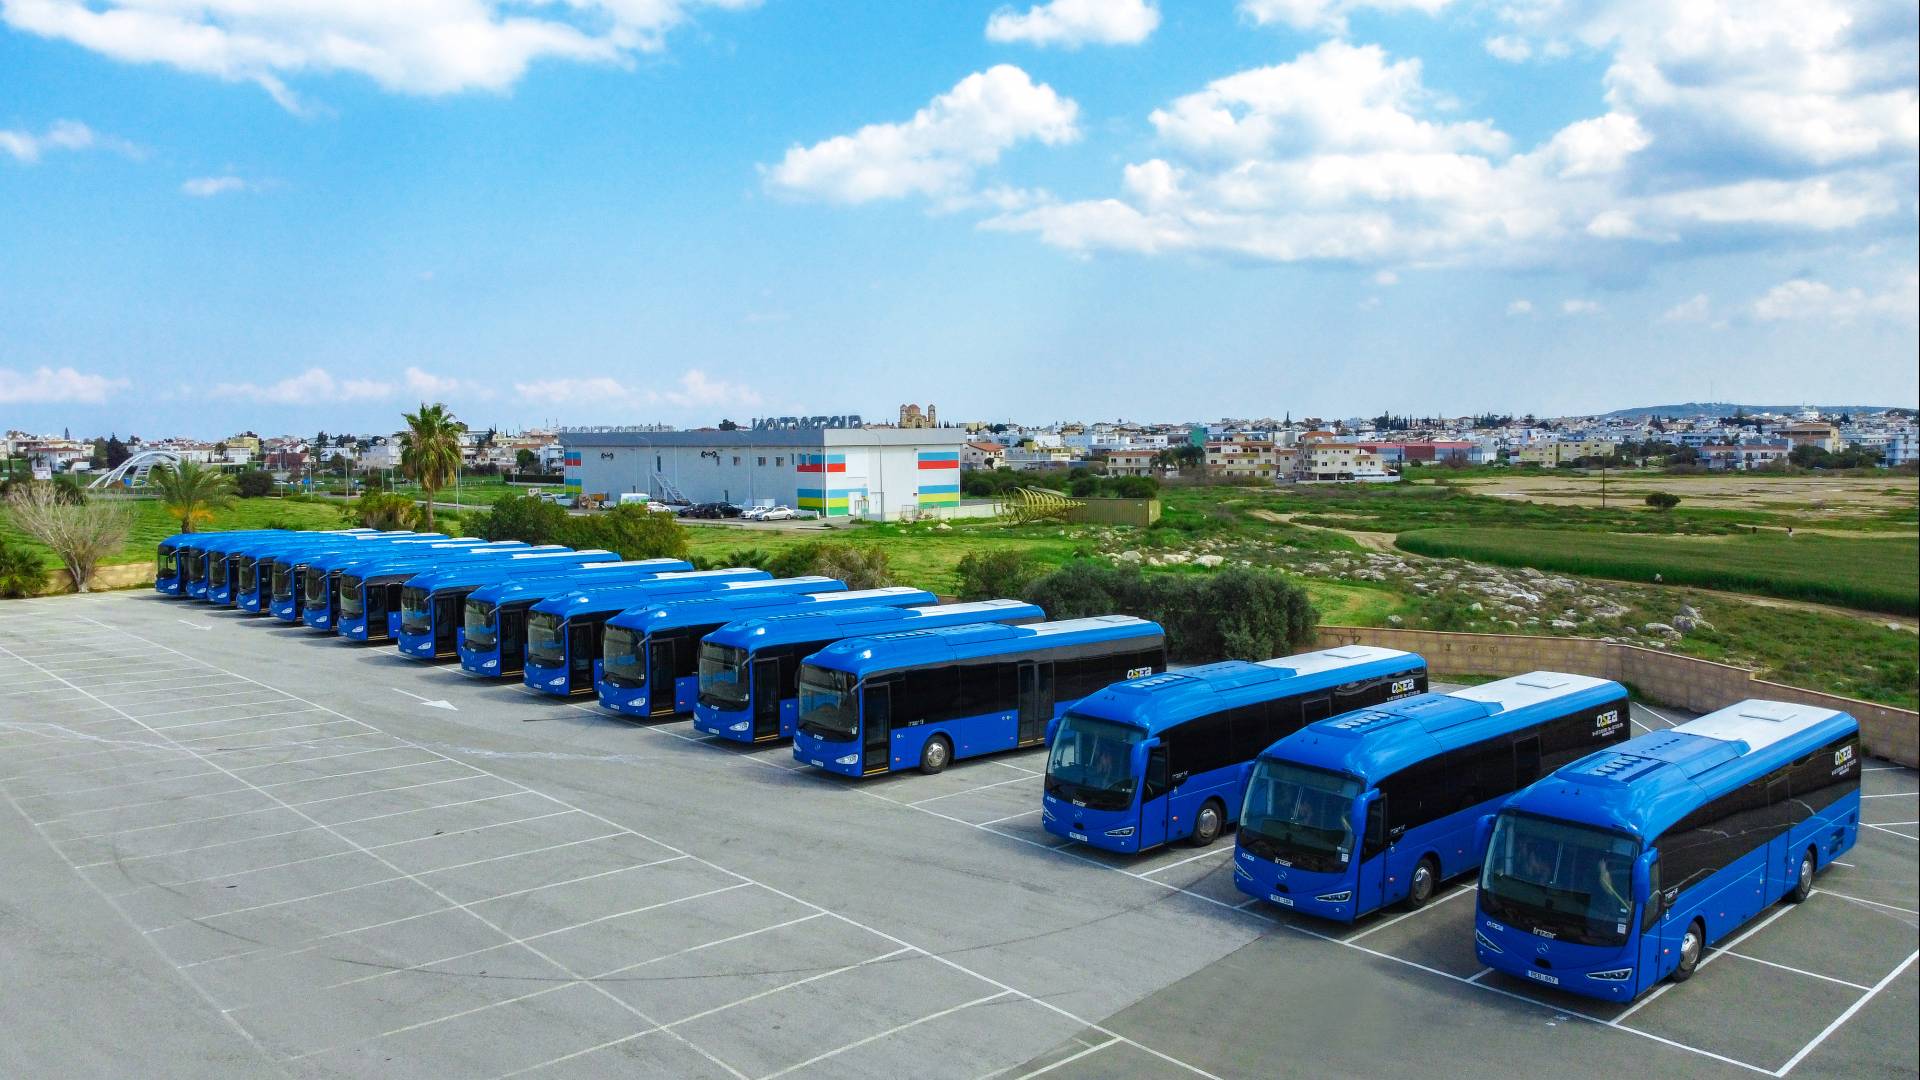 Les autocars Irizar conquièrent le Transport public de Chypre